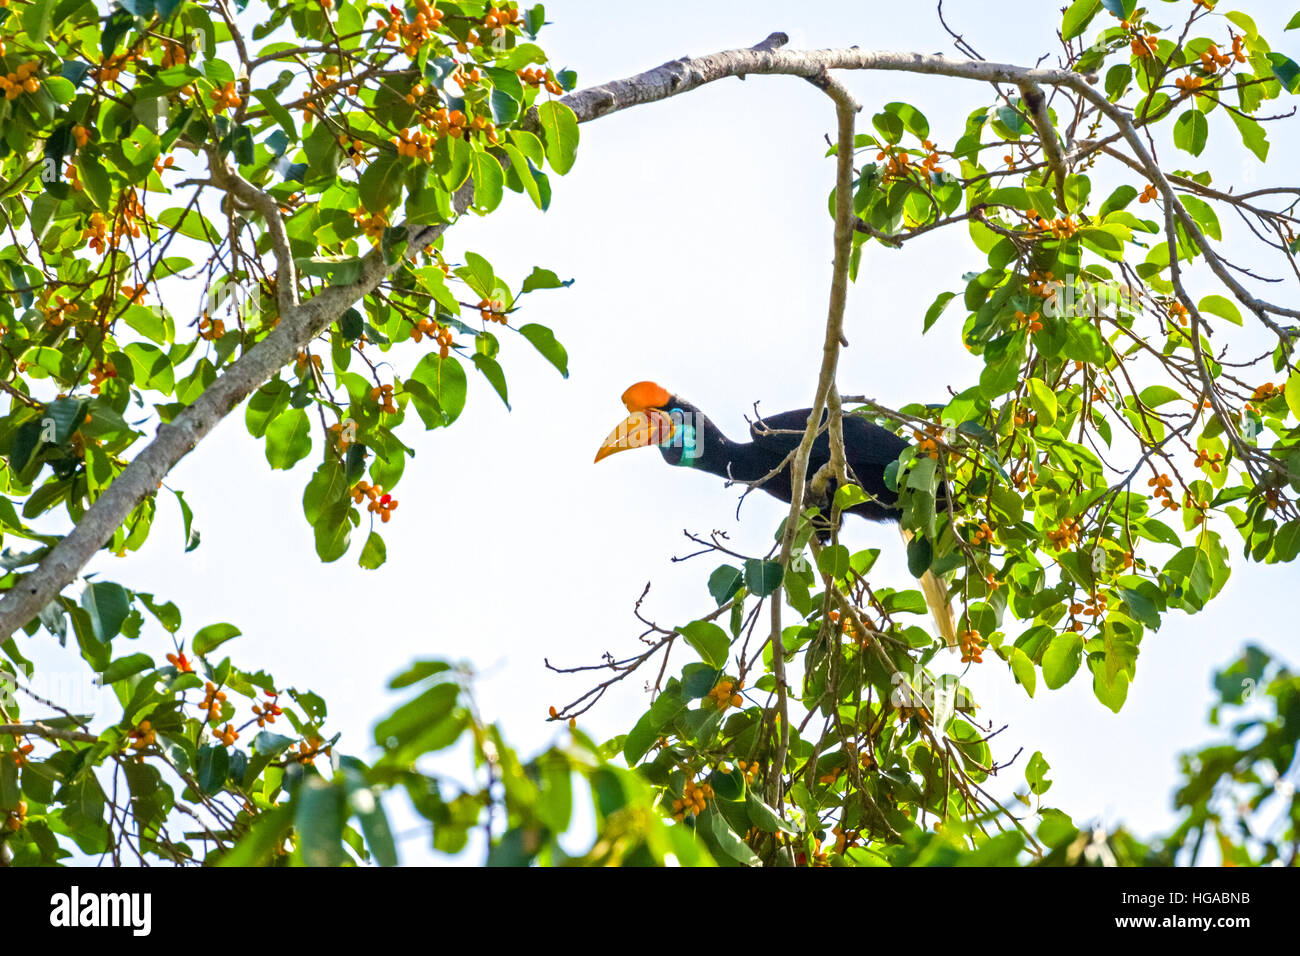 Un individuo femminile di hornbill knobbed, o a volte chiamato Sulawesi hornbill rugged (Rhyticeros cassidix) su un albero di fico (ficus) in Indonesia. Foto Stock